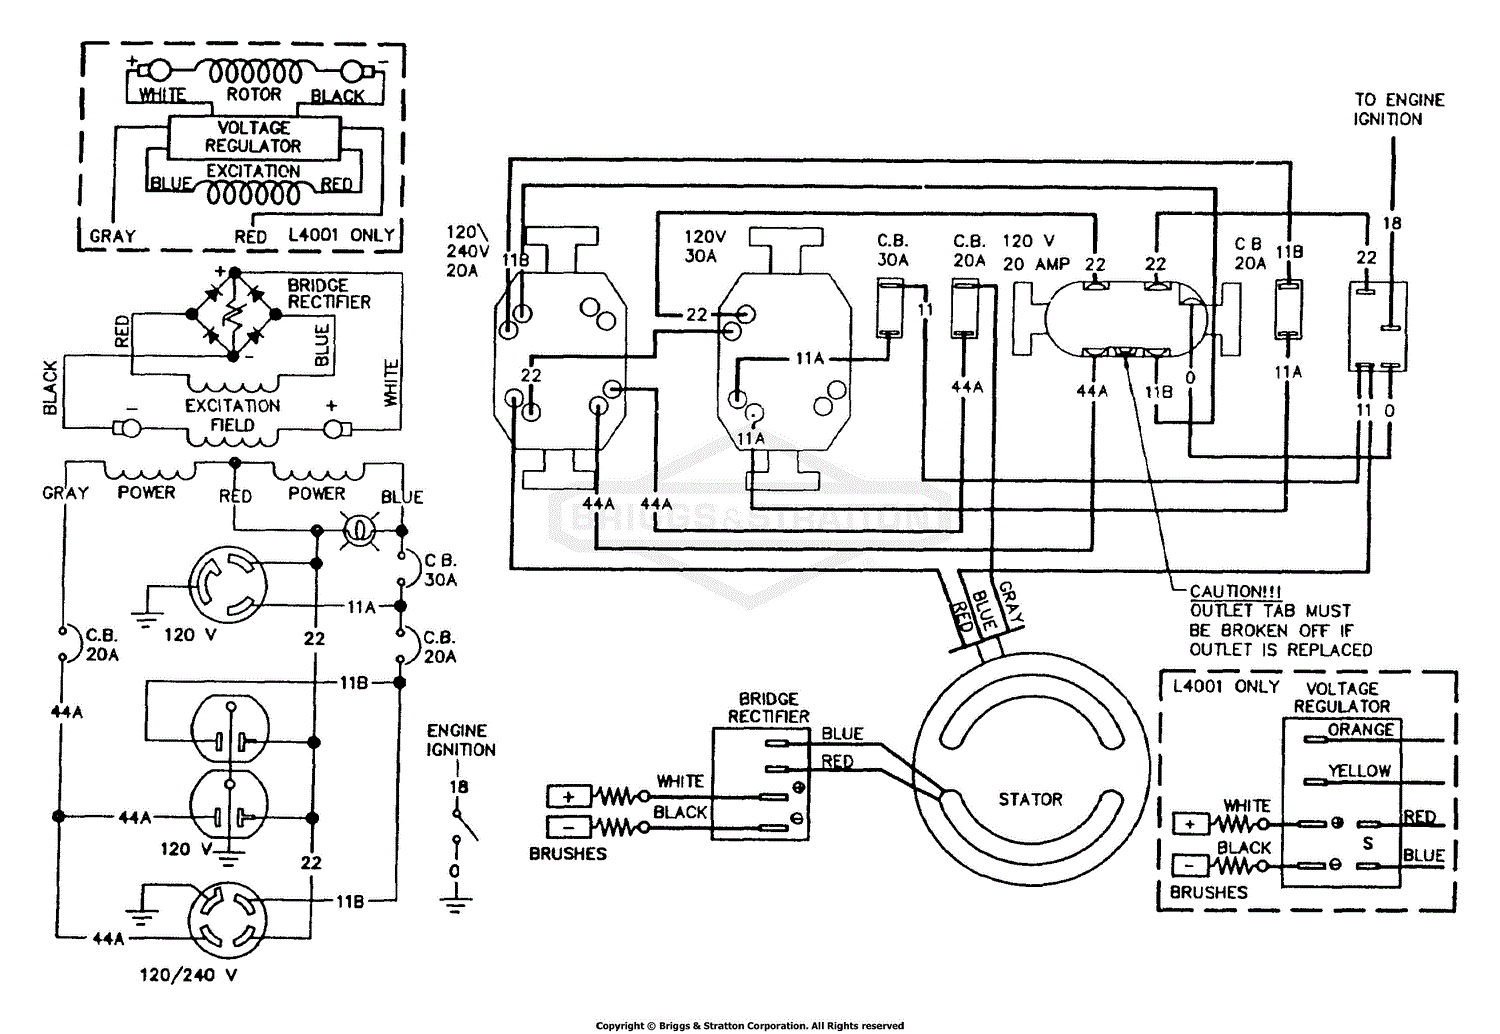 ATMEGA64 development board schematic and pcb W3150 development board